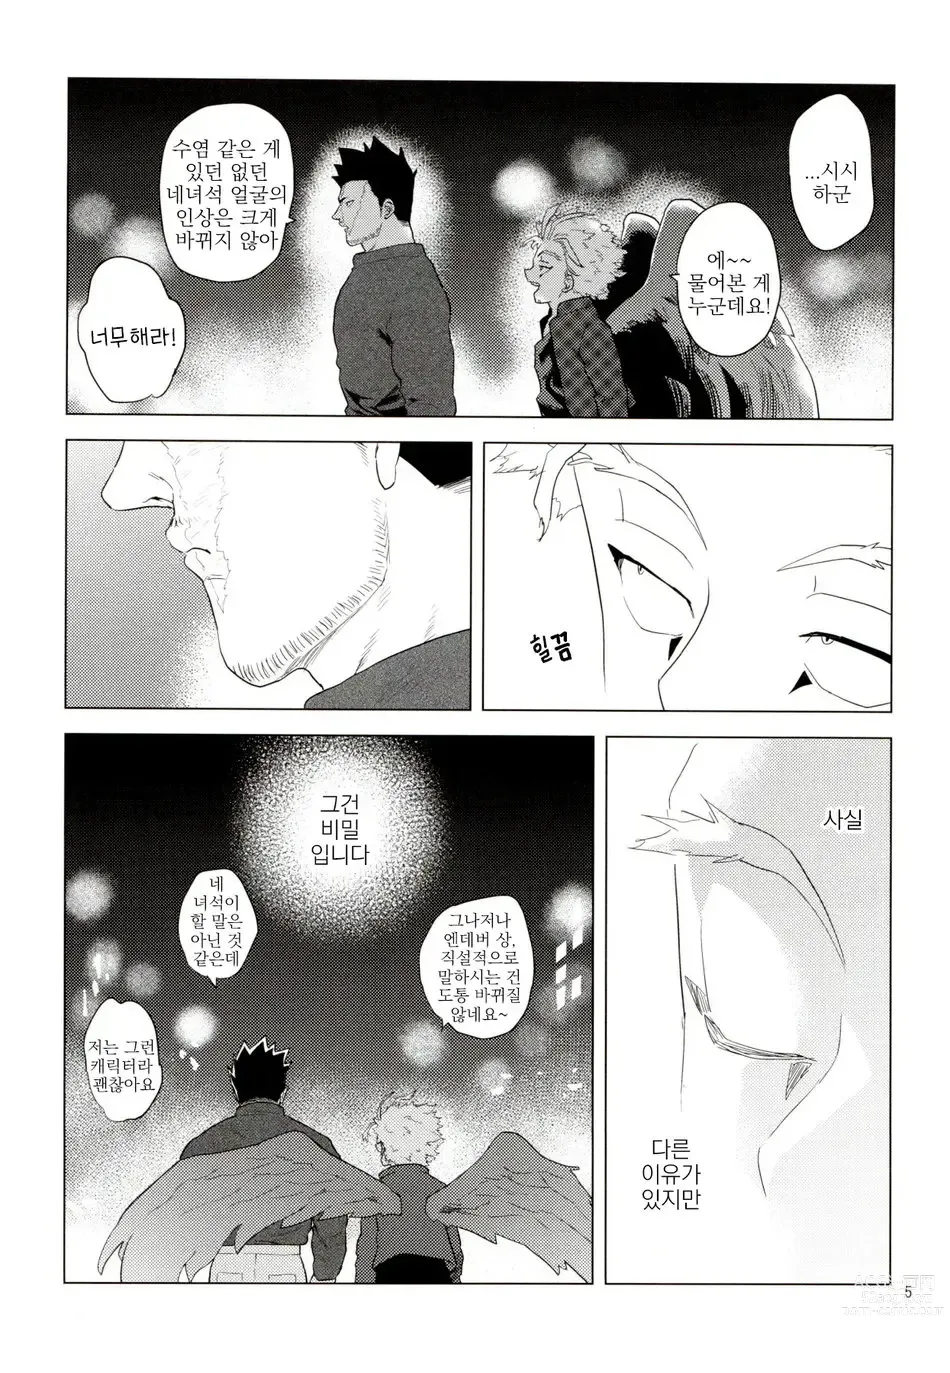 Page 4 of doujinshi Enholog #01